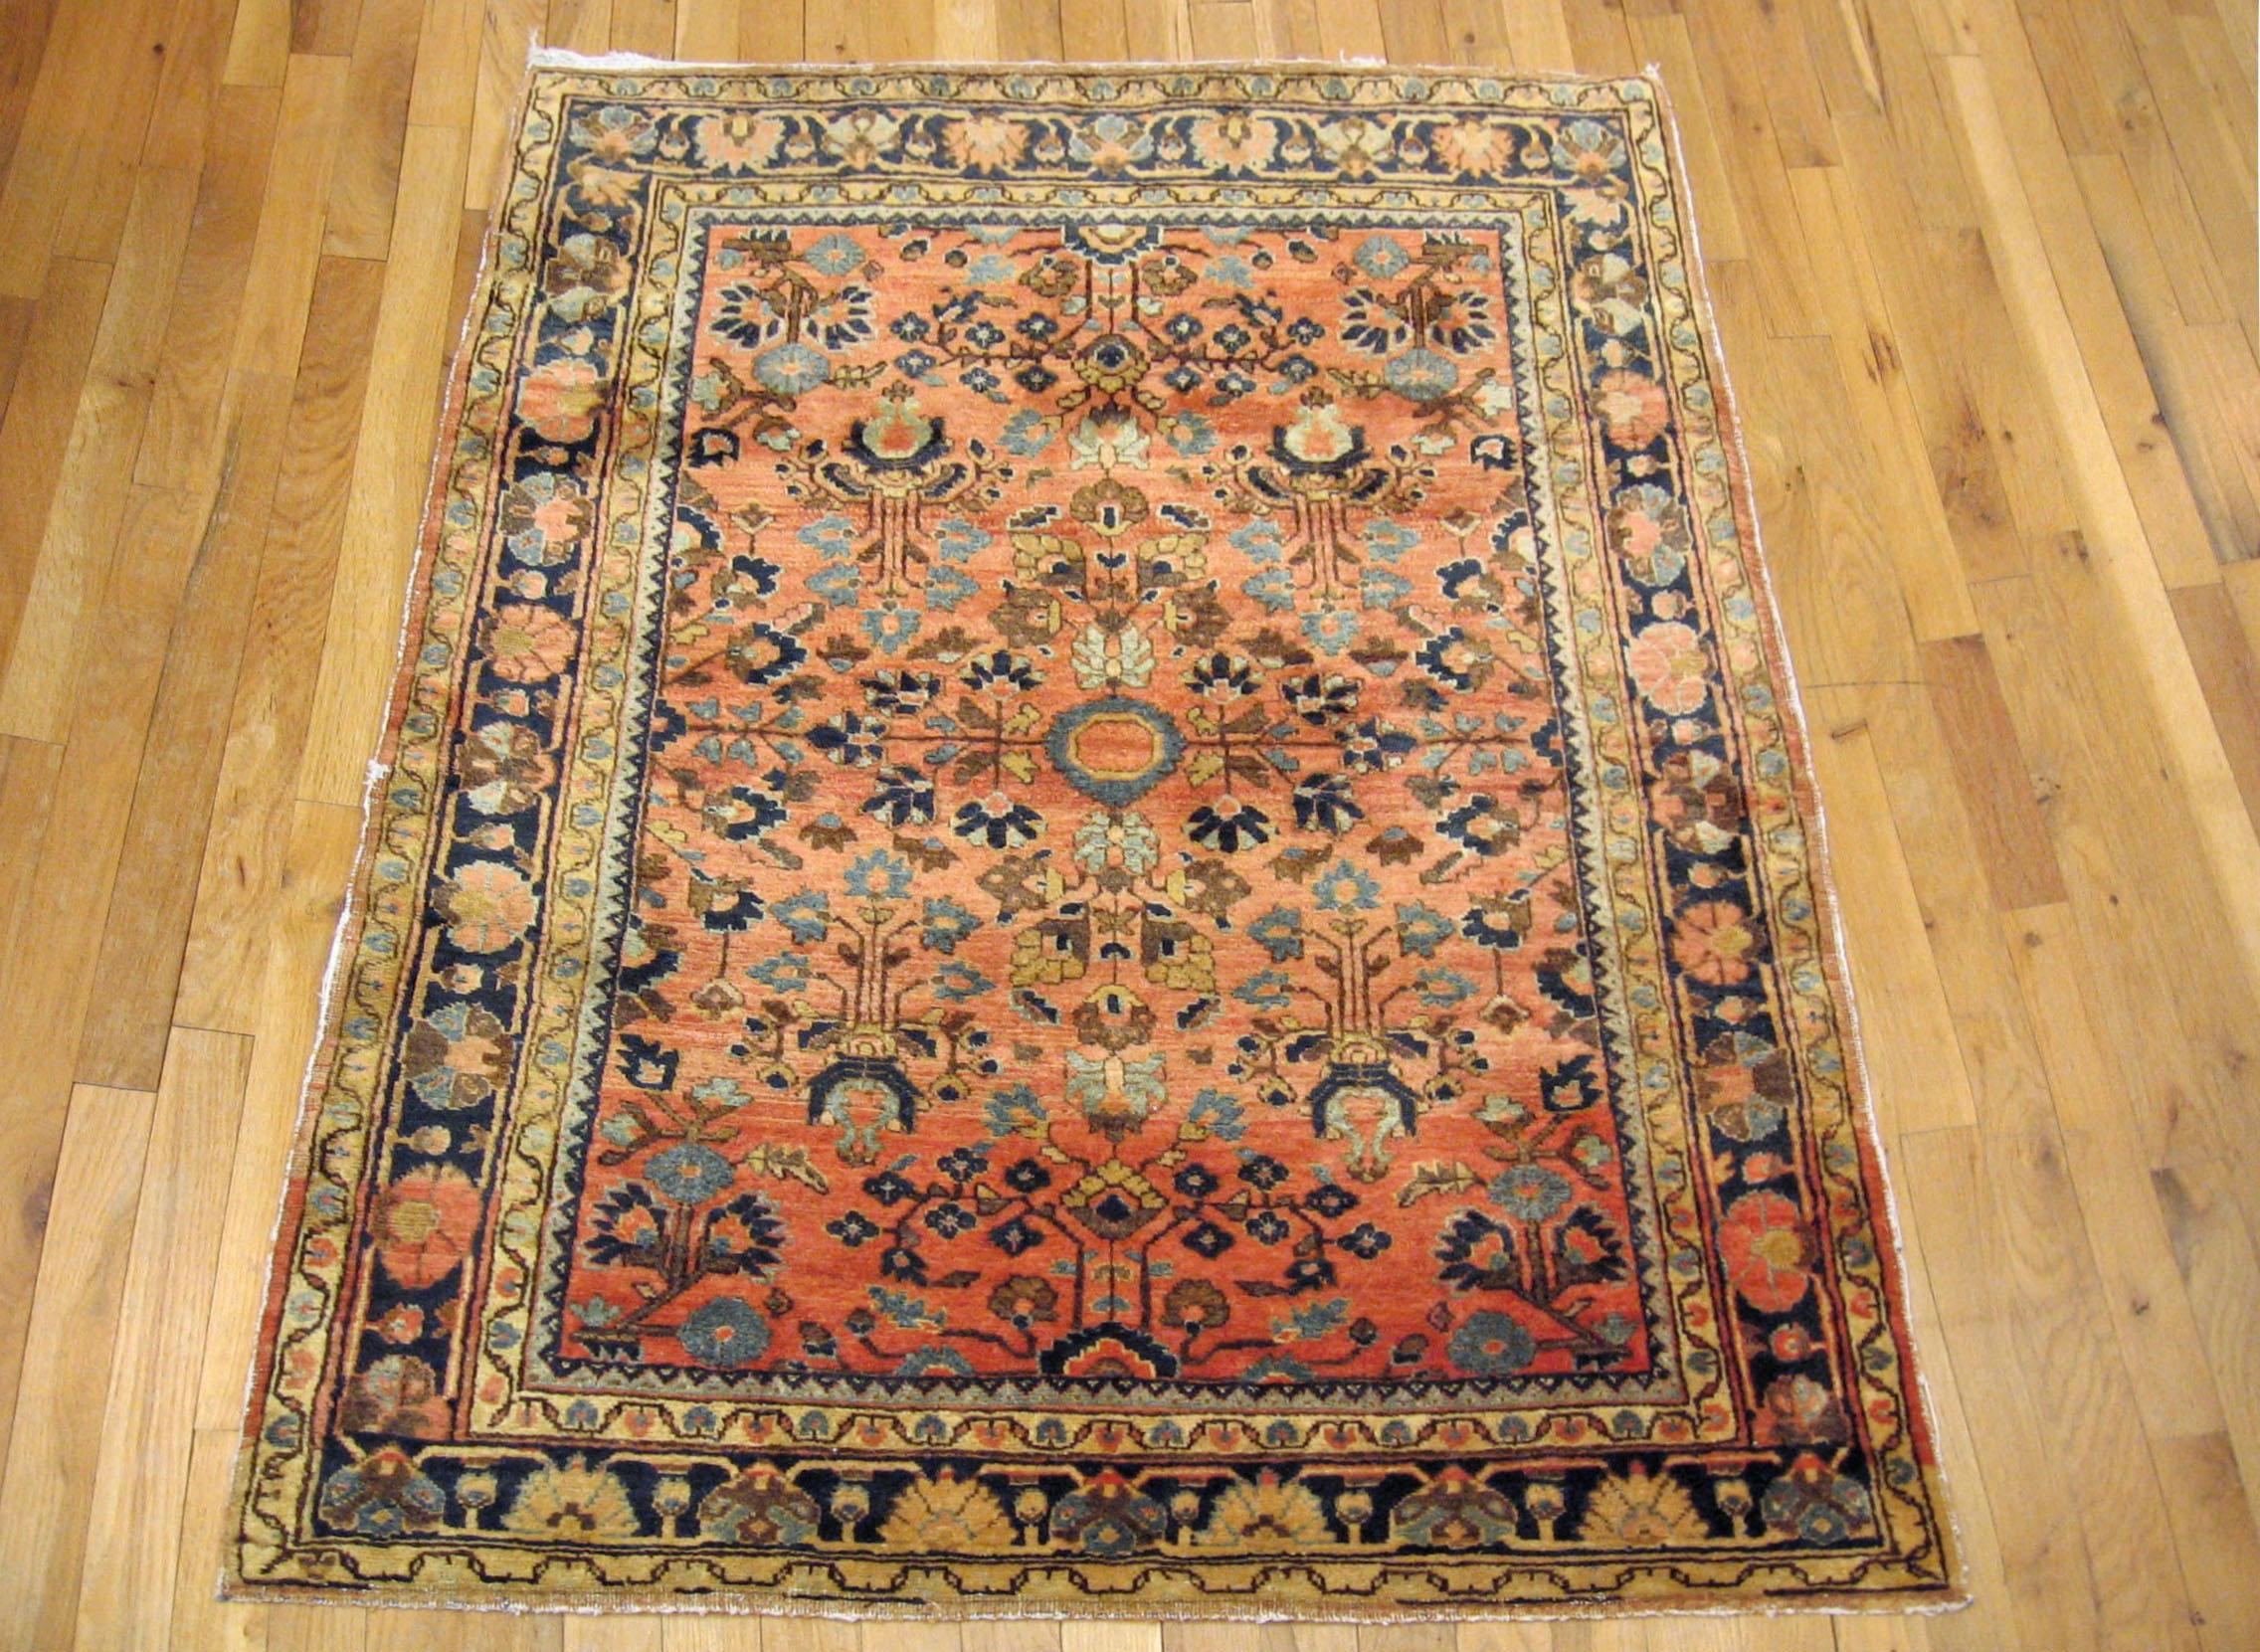 Antique Persian Sarouk Oriental Rug, circa 1910, Small size

An antique Persian Sarouk oriental rug, size 4'8